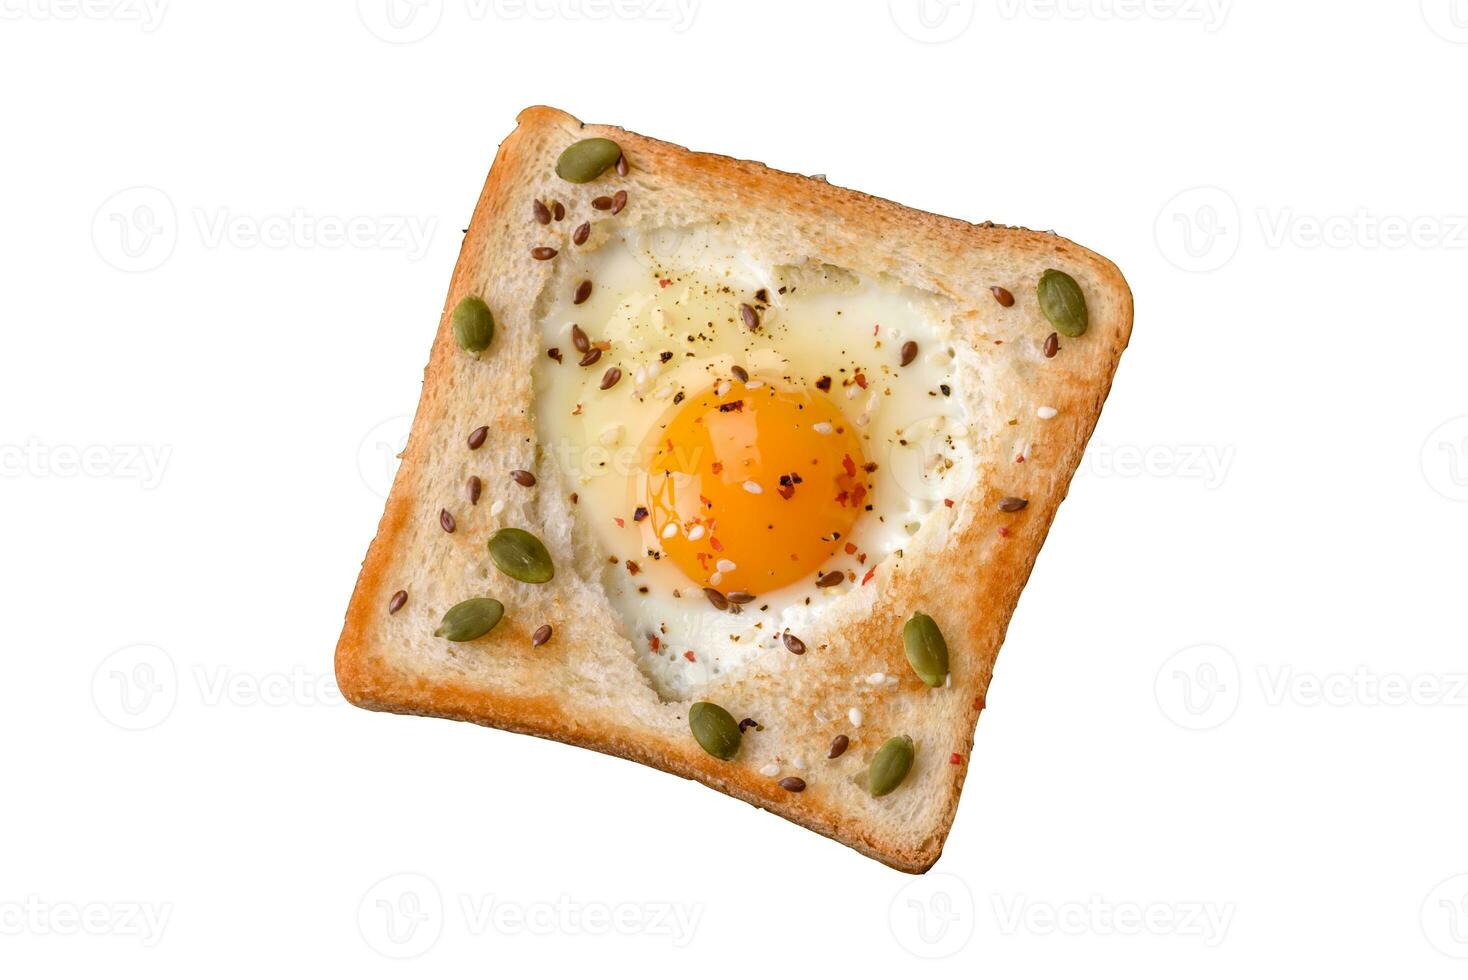 huevo frito en forma de corazón en pan tostado con semillas de sésamo, semillas de lino y semillas de calabaza en un plato negro foto